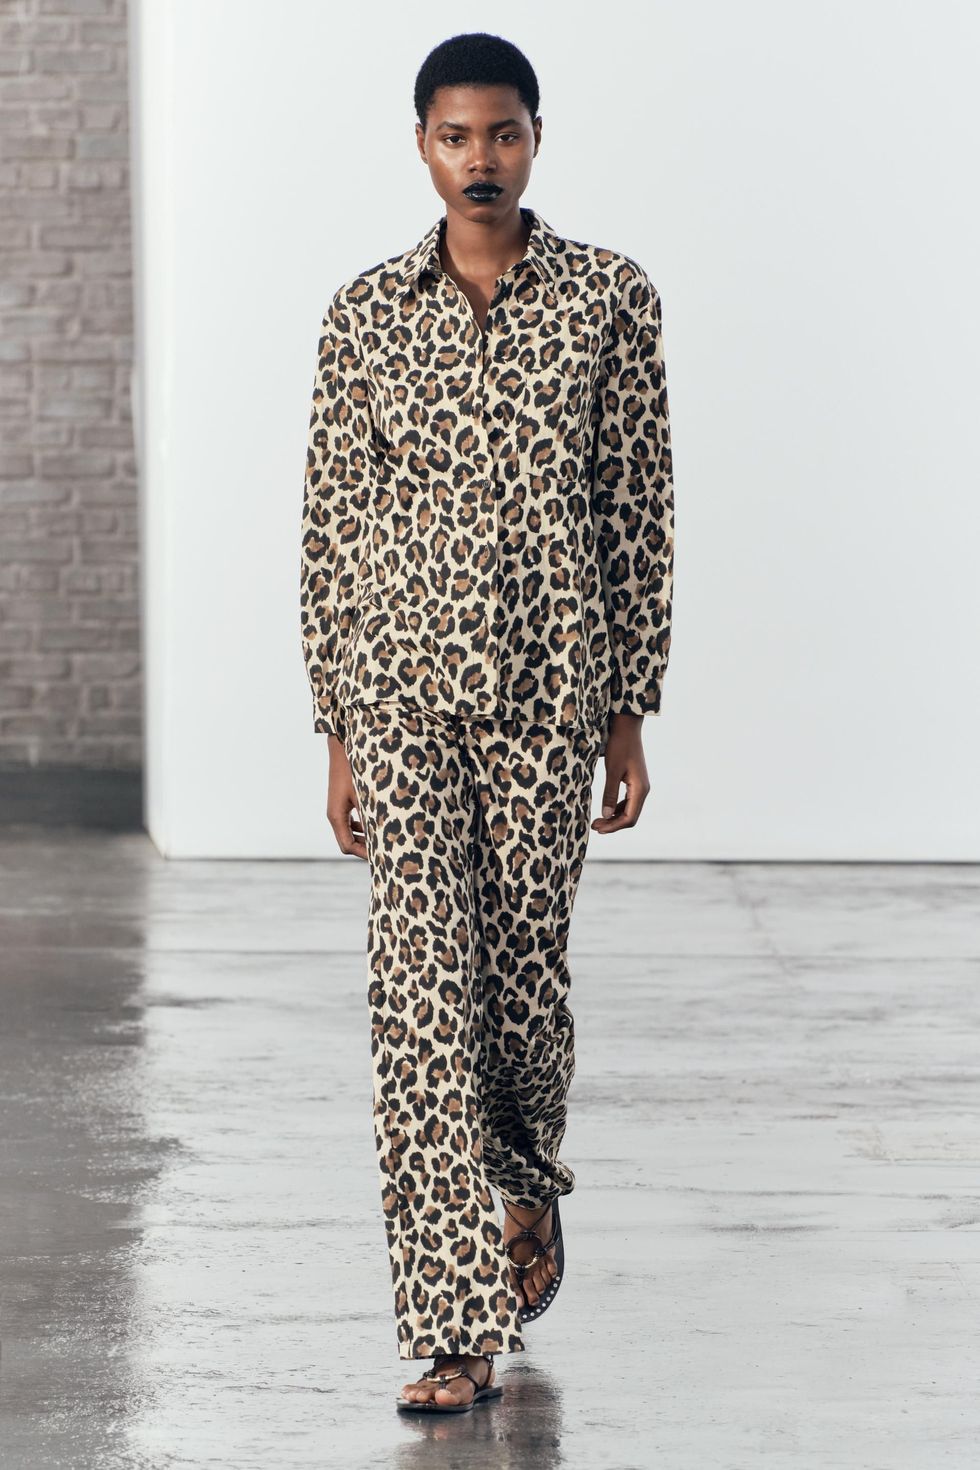 Pantalones 'animal print' de leopardo